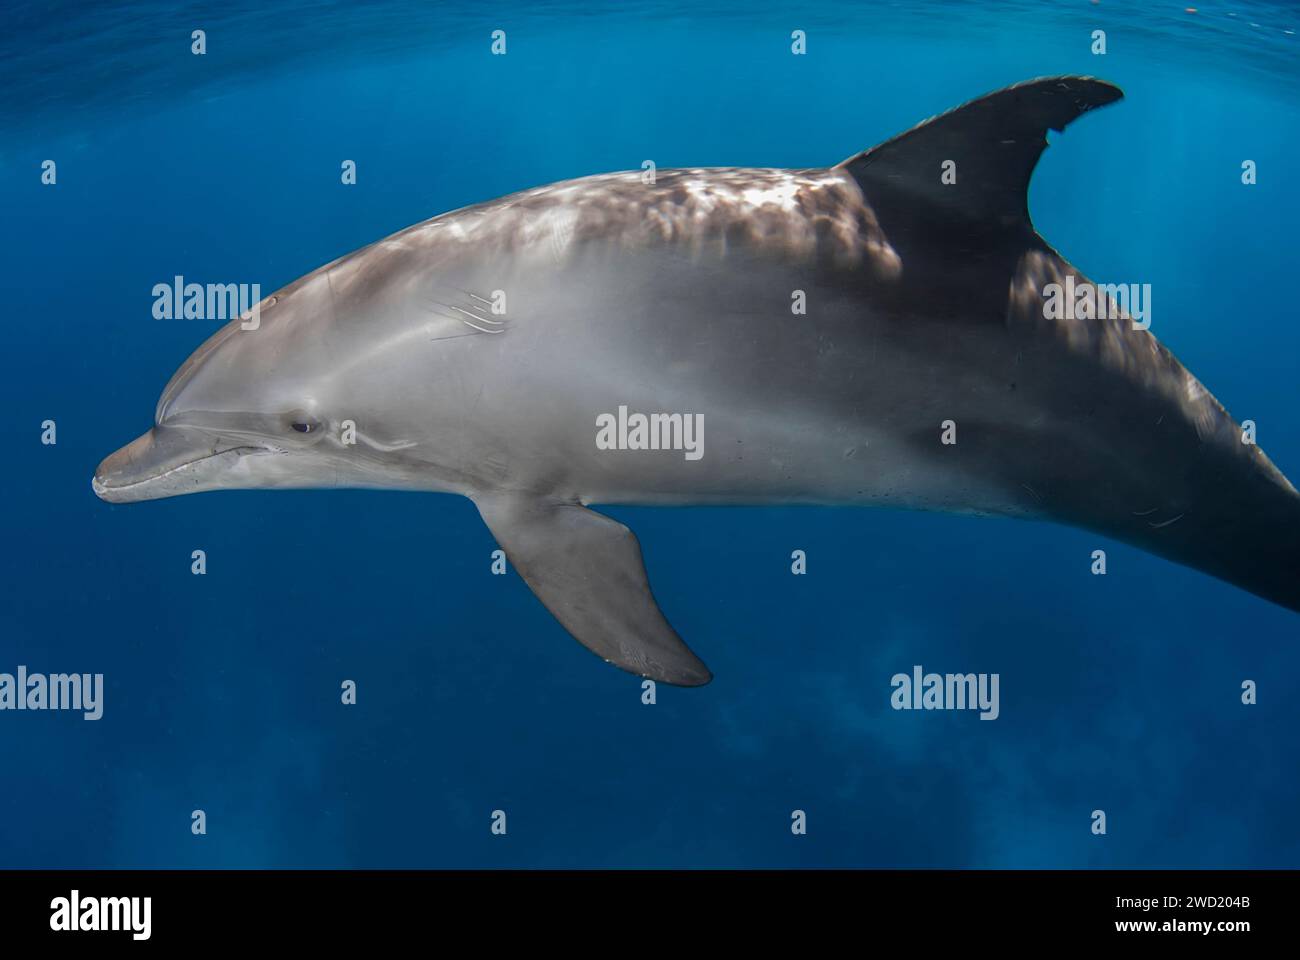 Un solitario delfino a tursiopo indo-Pacifico (Tursiops aduncus) naviga con grazia nelle tranquille acque blu, mostrando il suo profilo elegante e la calma dem Foto Stock